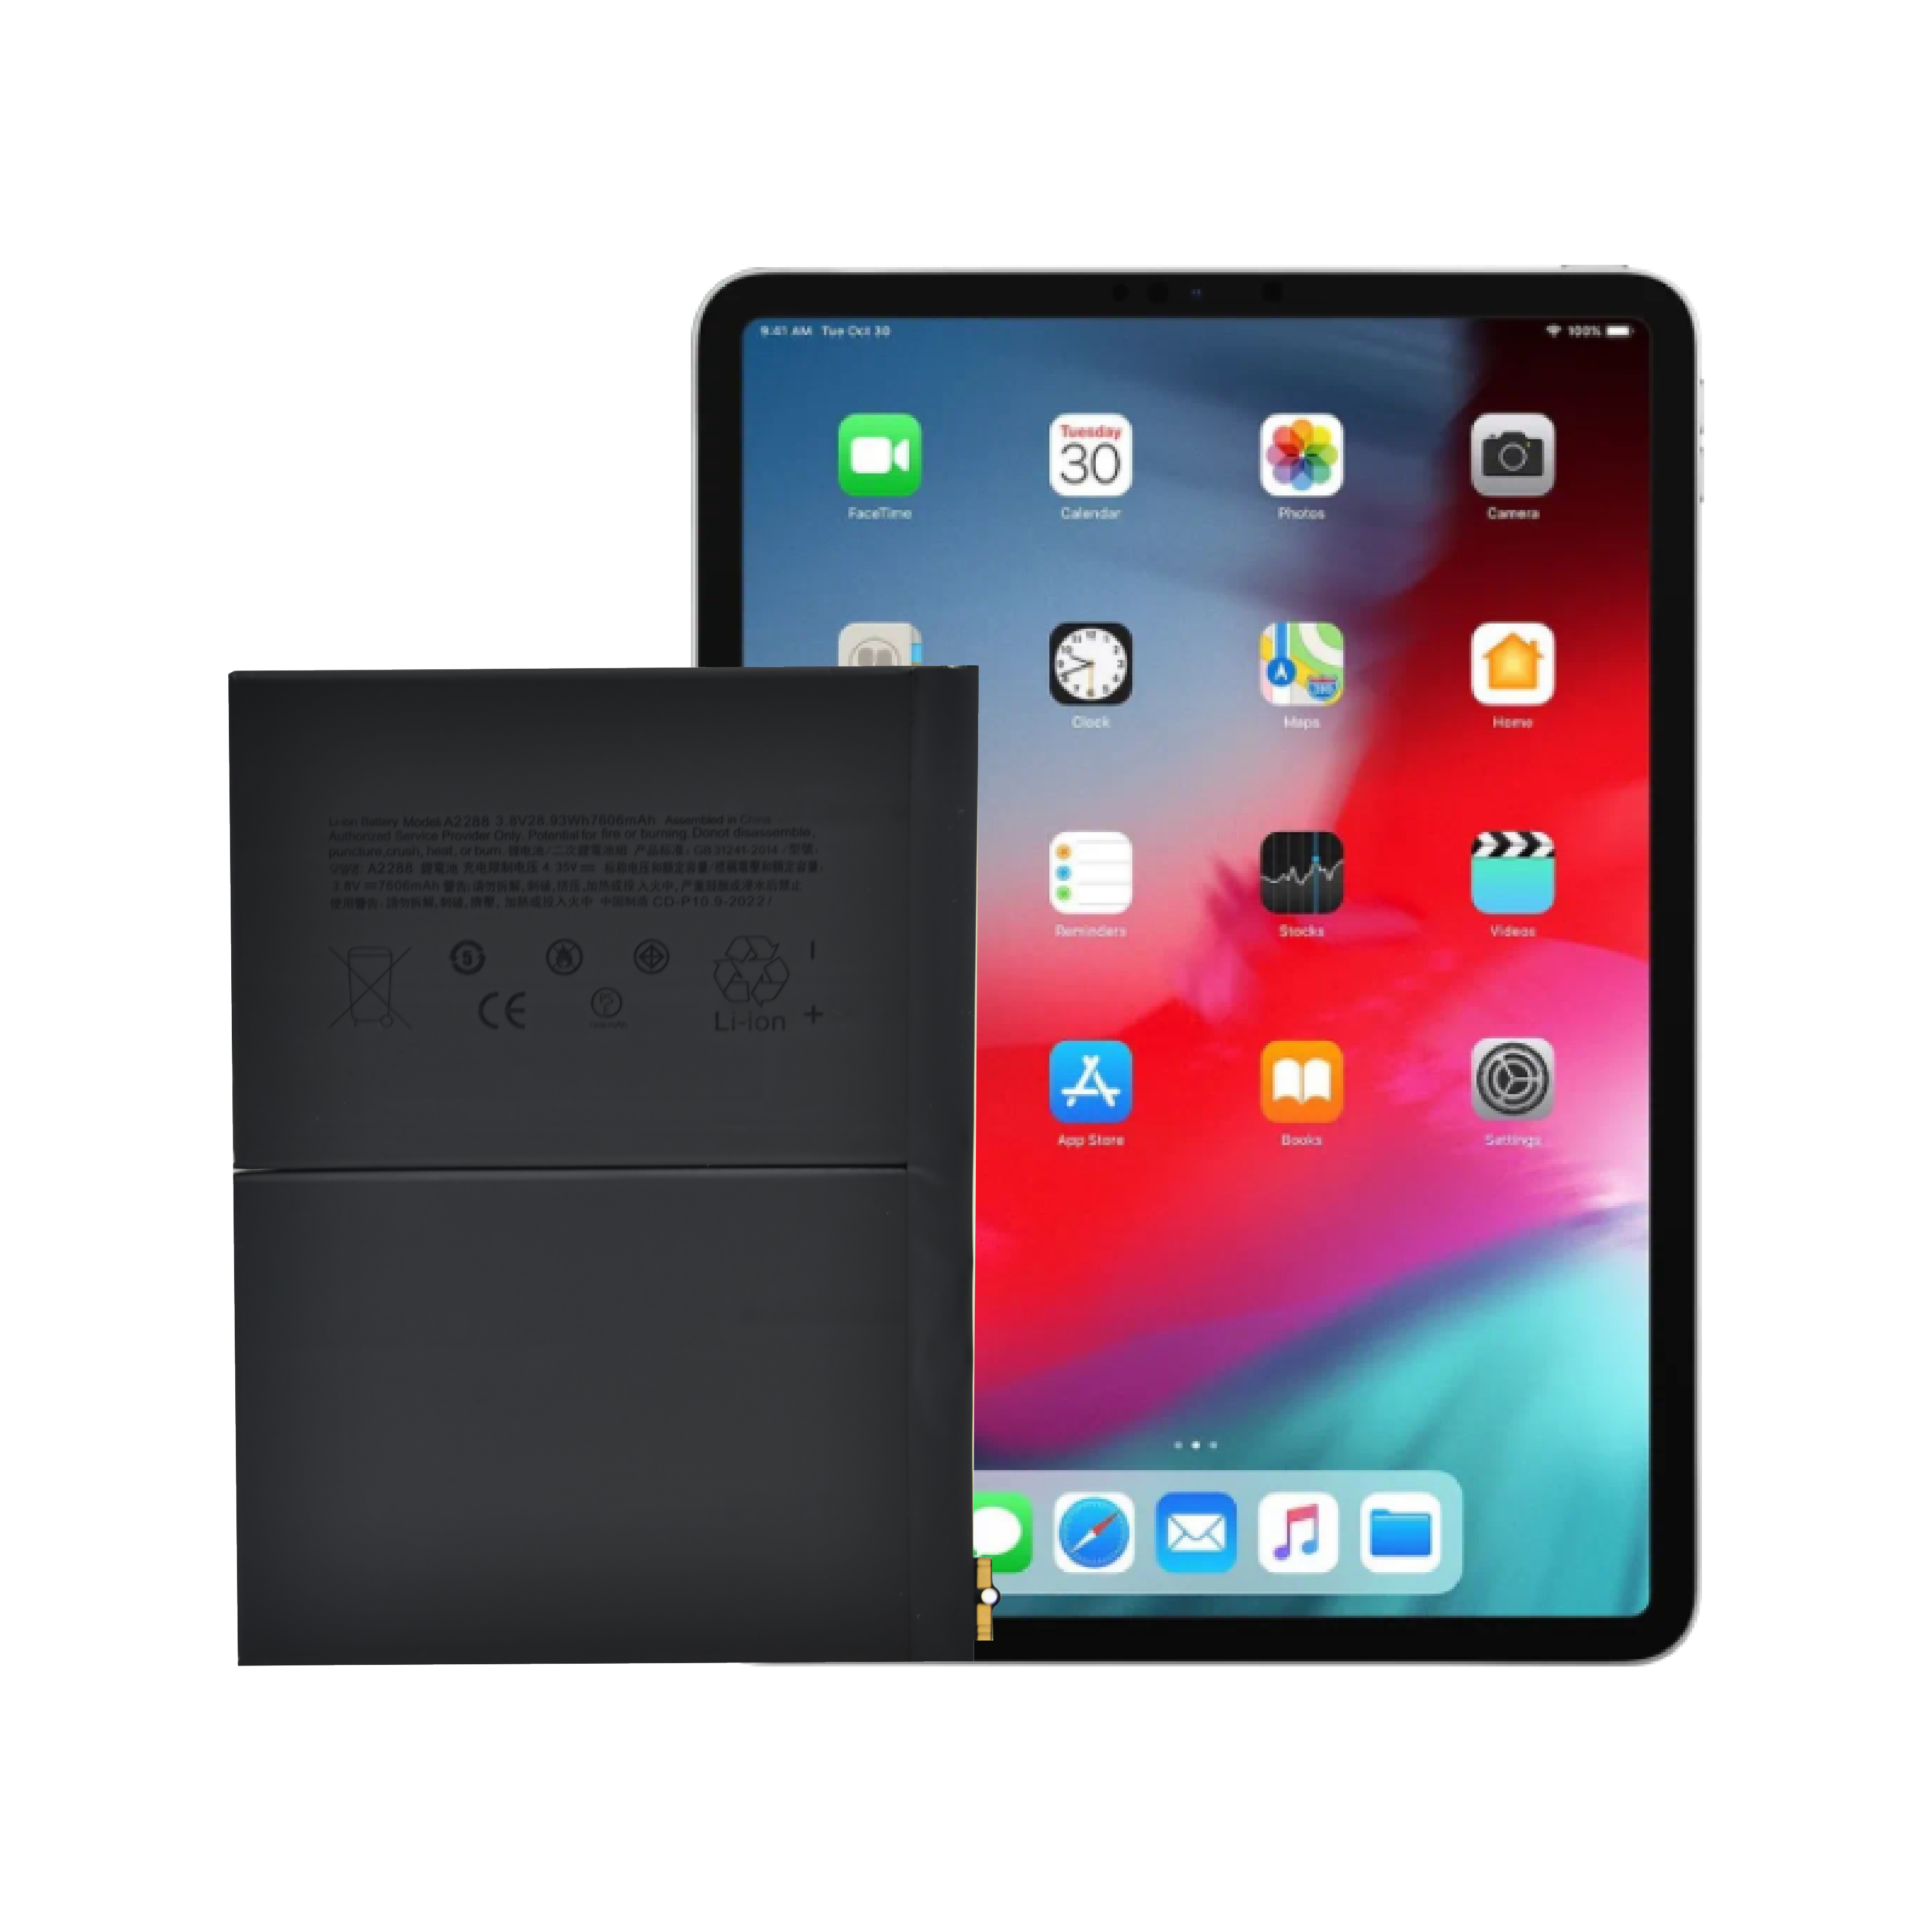 Héich Qualitéit OEM Brand New 0 Zyklus Intern Tablet Batterie Fir Apple iPad Air 4 Batterie